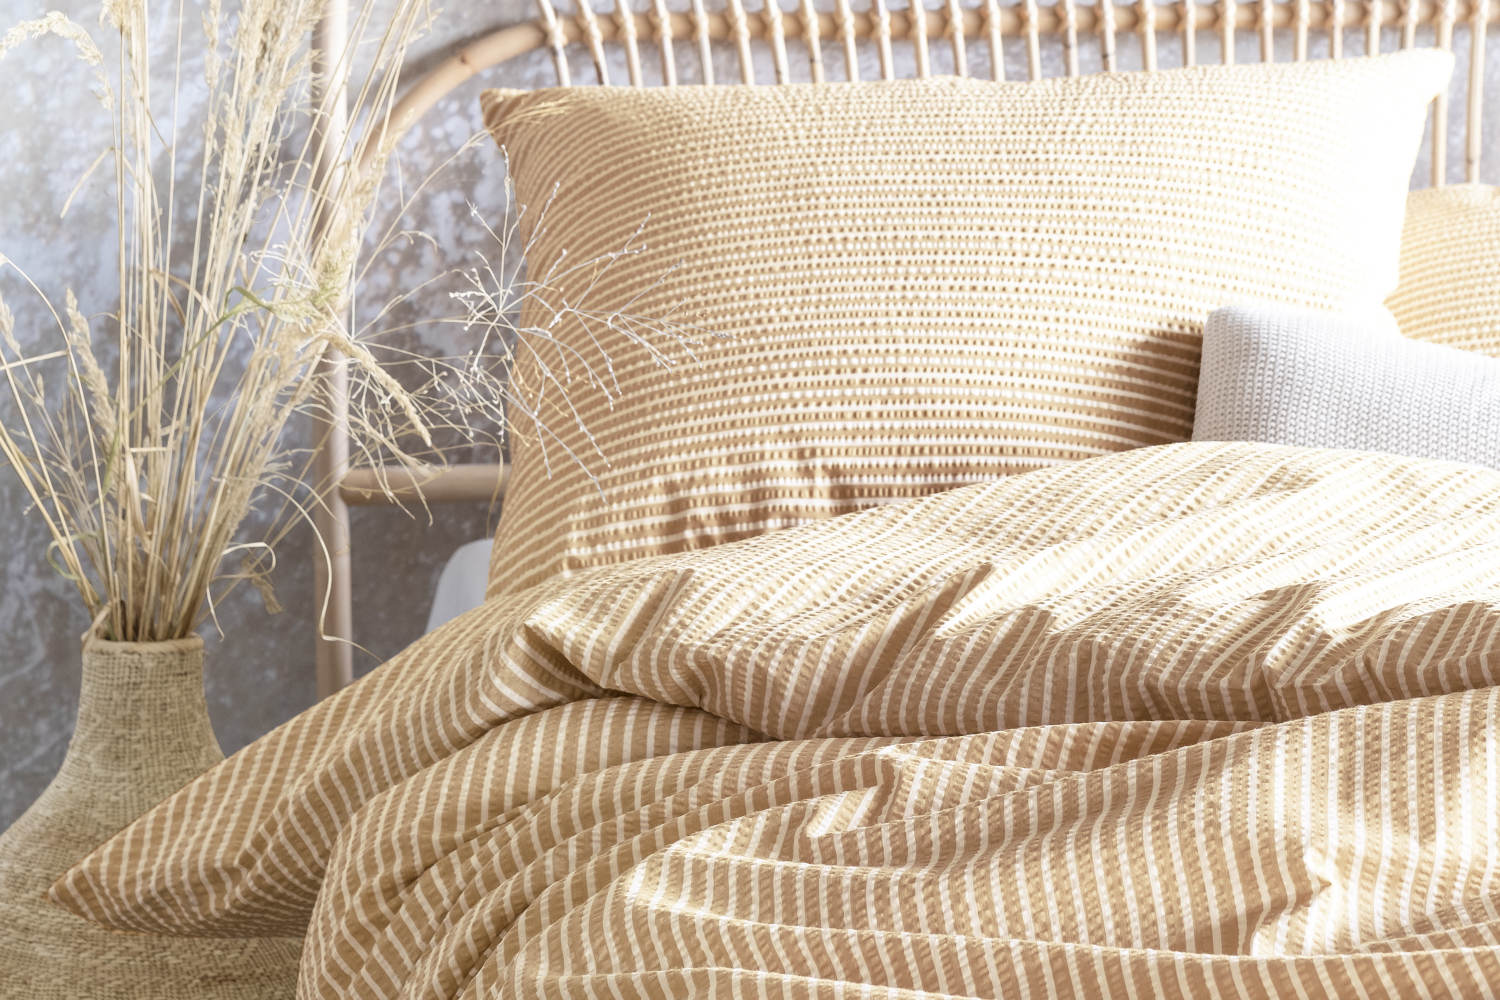 Irisette Seersucker Bettwäsche Tommi aus 100% Baumwolle, gelb